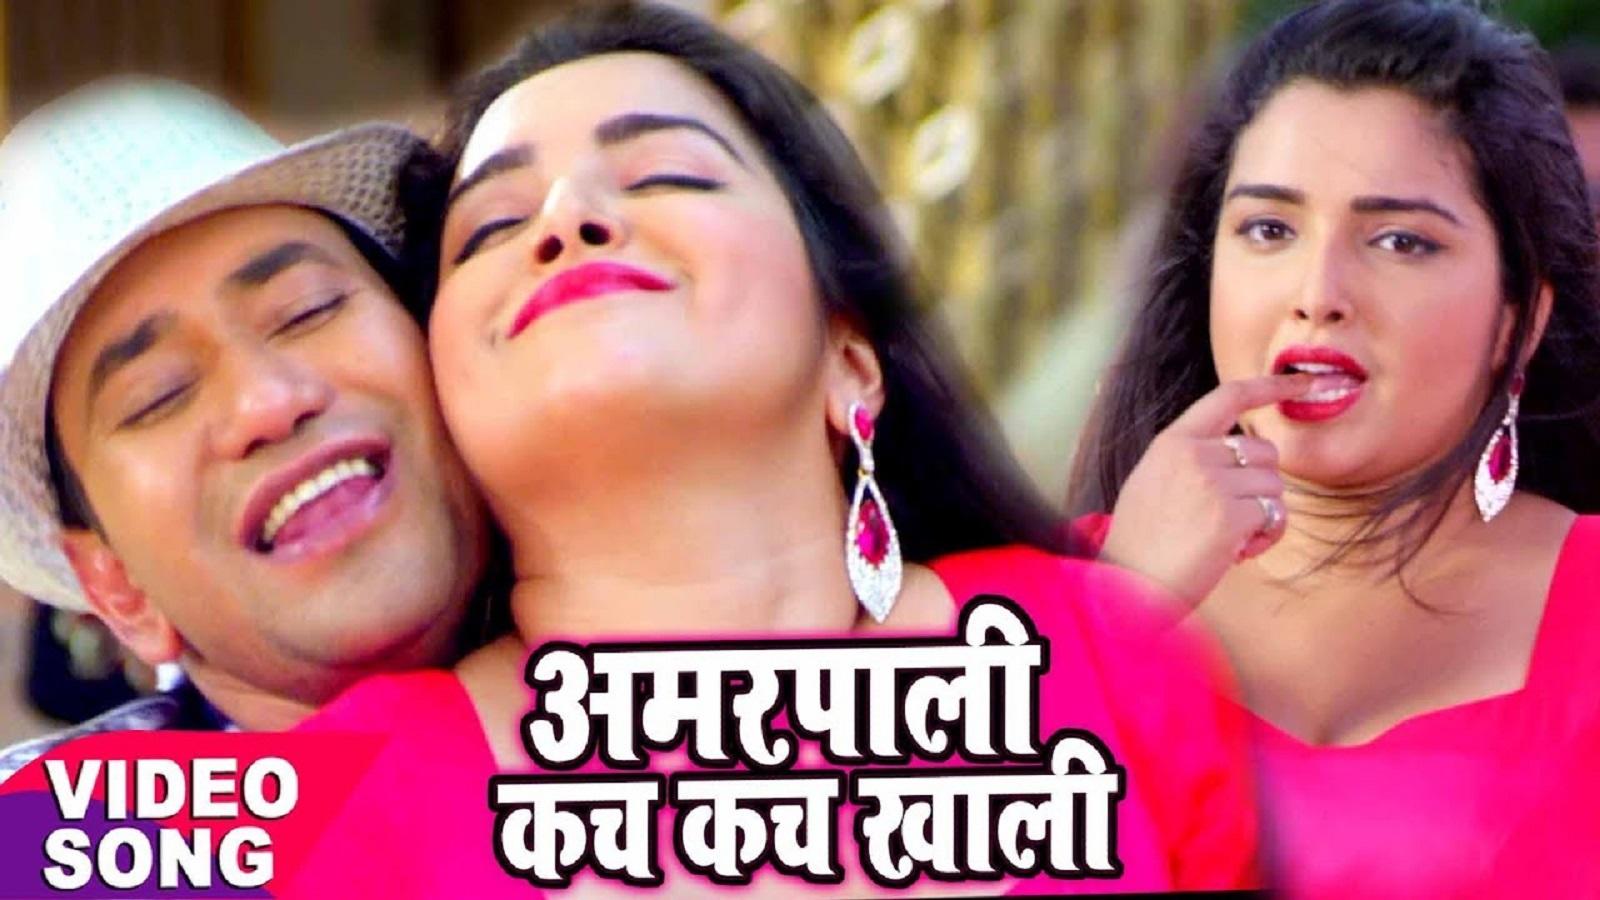 Jaldi Bhejo Gaana / Naya Bhojpuri Gana Video Song Latest Bhojpuri Song A Jaan Chali Aaw Ho Sung ...